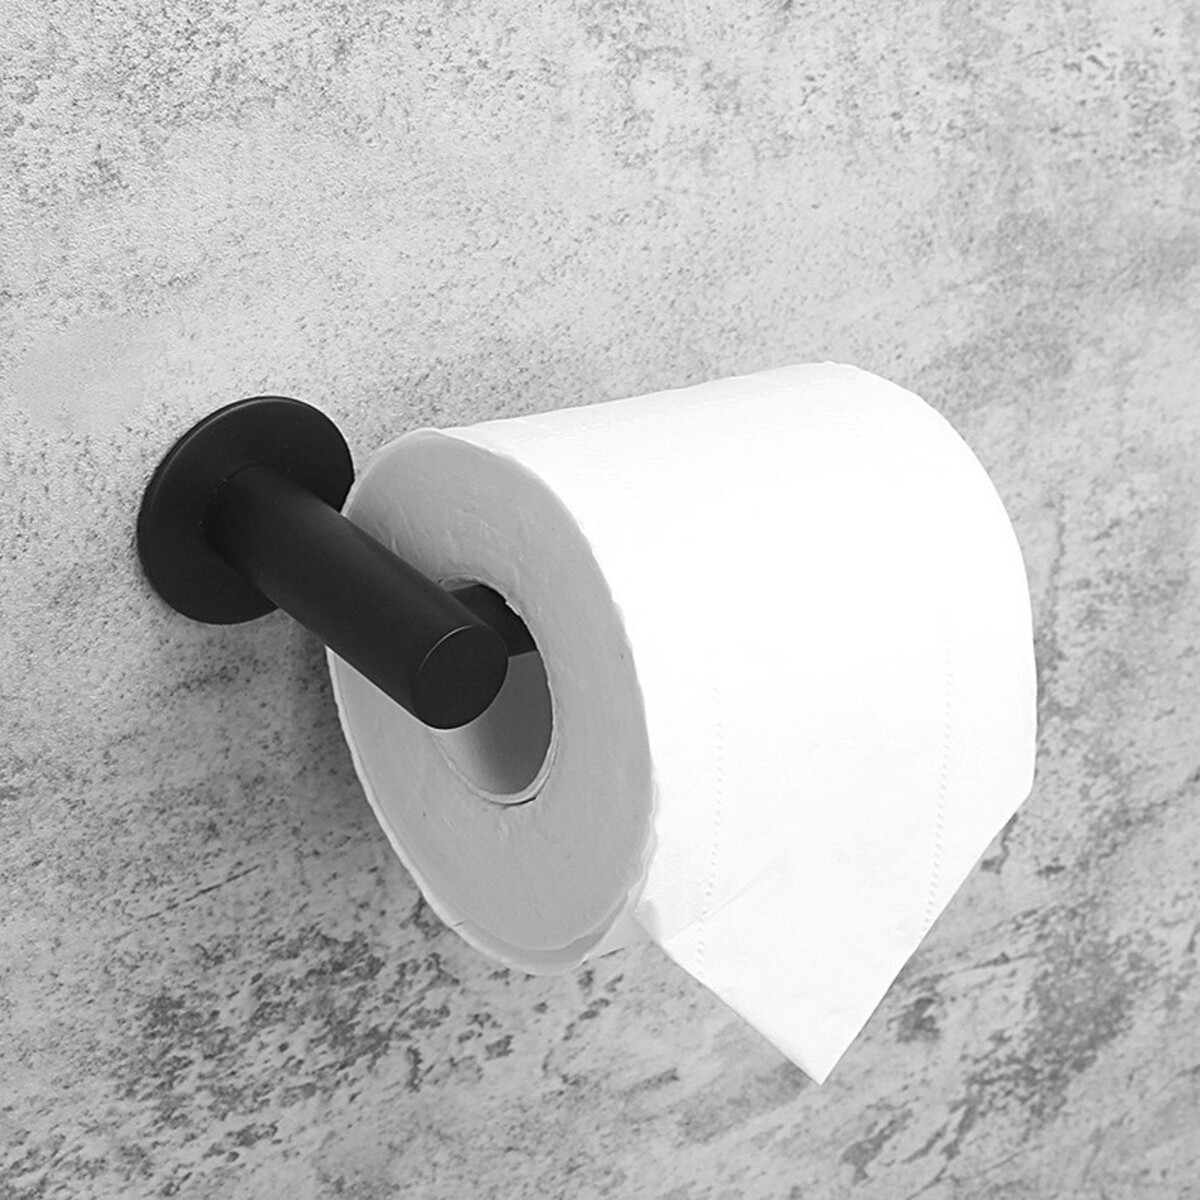 Держатель для туалетной бумаги штольц stölz, 16,2×2,5×9,5 см, нержавеющая сталь, цвет черный